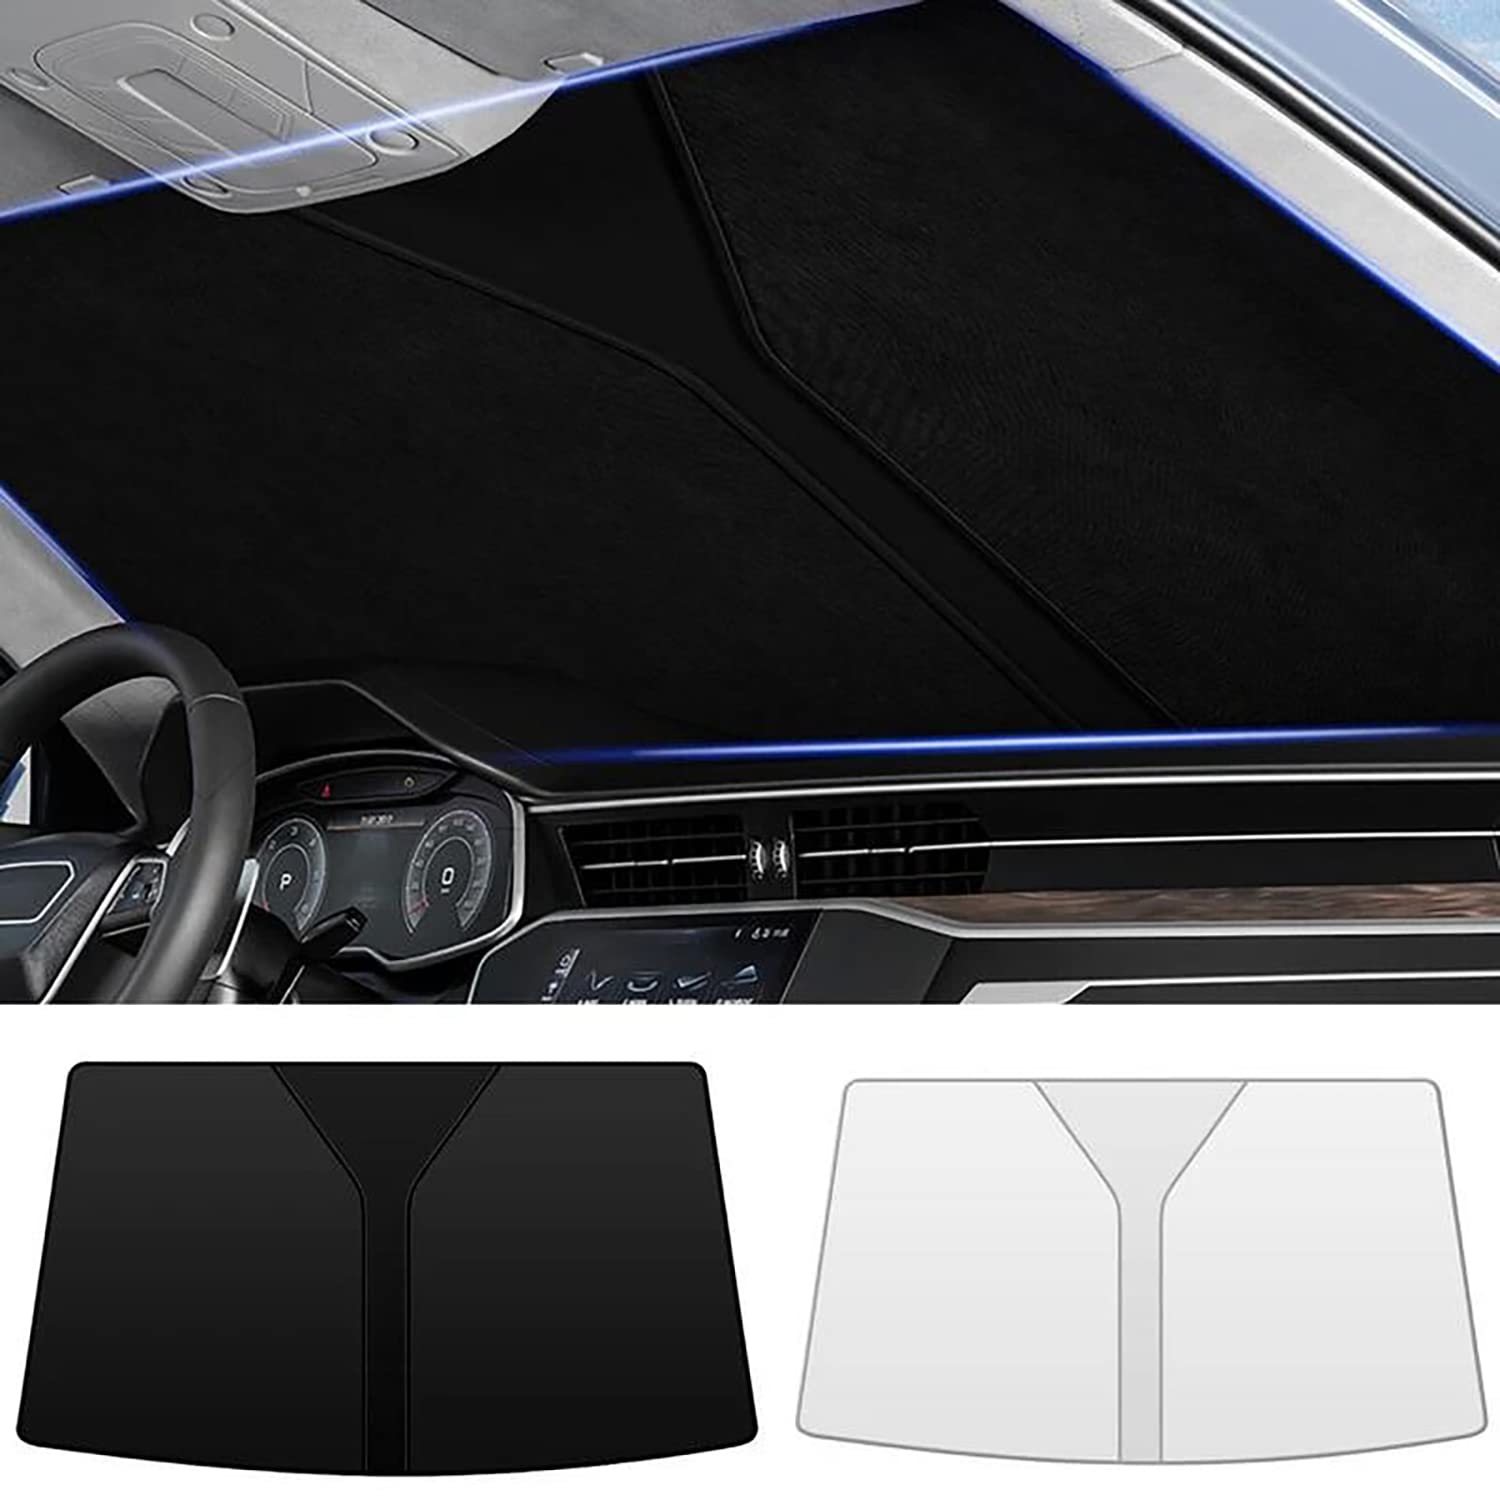 Frontscheiben Sonnenschutz Passend für VW Golf Ⅶ Sportsvan 2012 2013 2014 2015 2016-2020, Hitzeschutz Auto UV-Reflexion, Faltbares Design, Einfache Lagerung,- Silver von TANEND